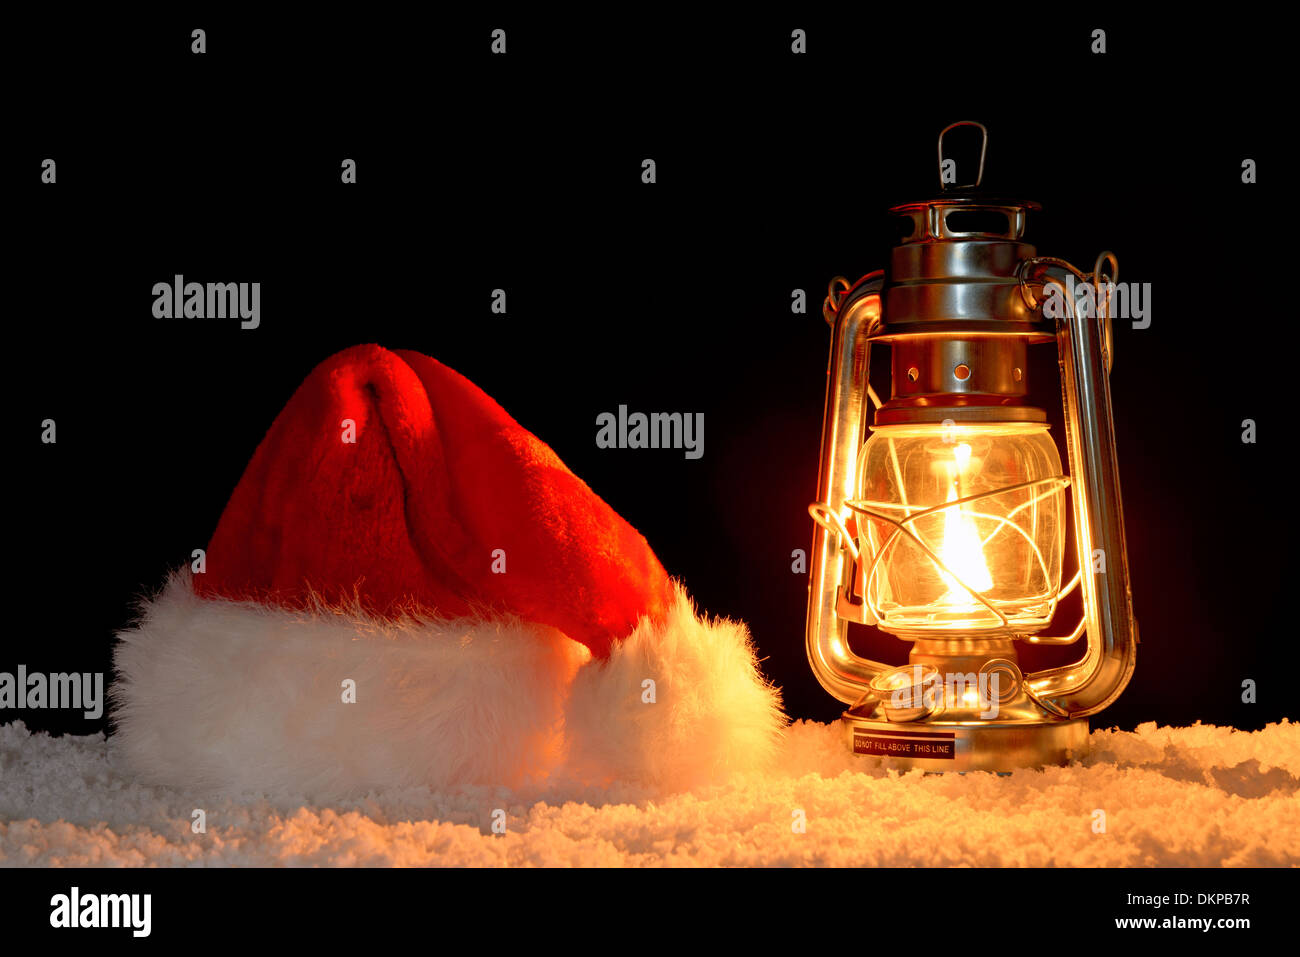 Nikolaus oder Weihnachtsmann Mütze auf Schnee, beleuchtet durch das Glühen eines Öls gefüllt Laterne, schwarzer Hintergrund. Stockfoto